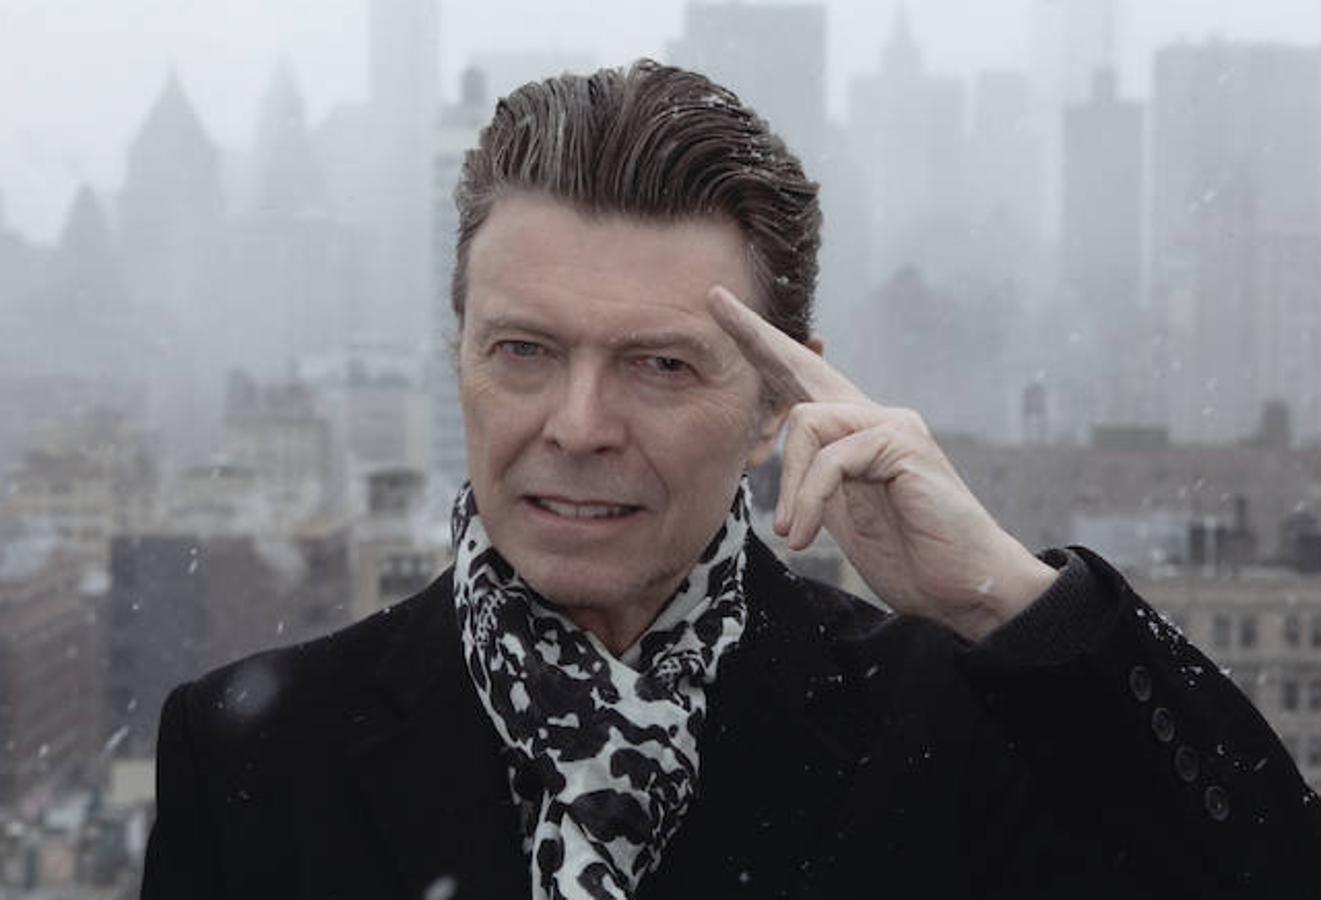 David Bowie. El difunto David Bowie (1947-2016), reconocido como uno de los artistas más importantes de la música rock, se le diagnosticó cáncer de hígado en el año 2014, sin embargo, el artista no hizo pública su enfermedad. Trabajó en su música hasta el final de sus días, hasta el punto de publicar su último álbum, «Blackstar», el 8 de enero de 2016. Dos días después, Bowie moría, a la edad de 69 años.